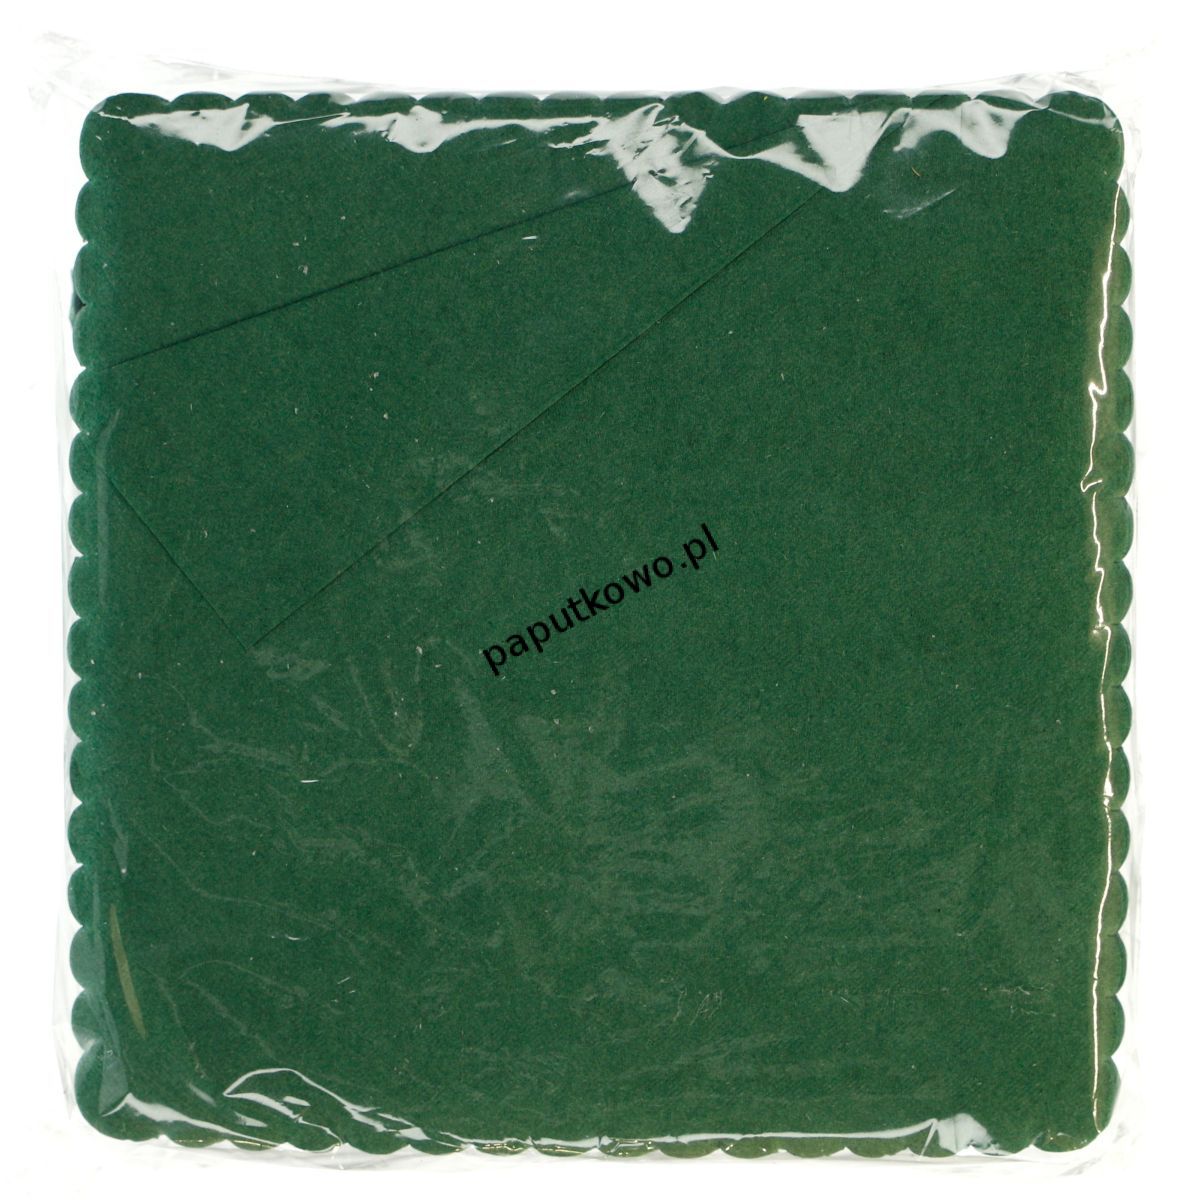 Serwetki Saba kolor: zielony 170 mm x 170 mm (K 400 17) 1